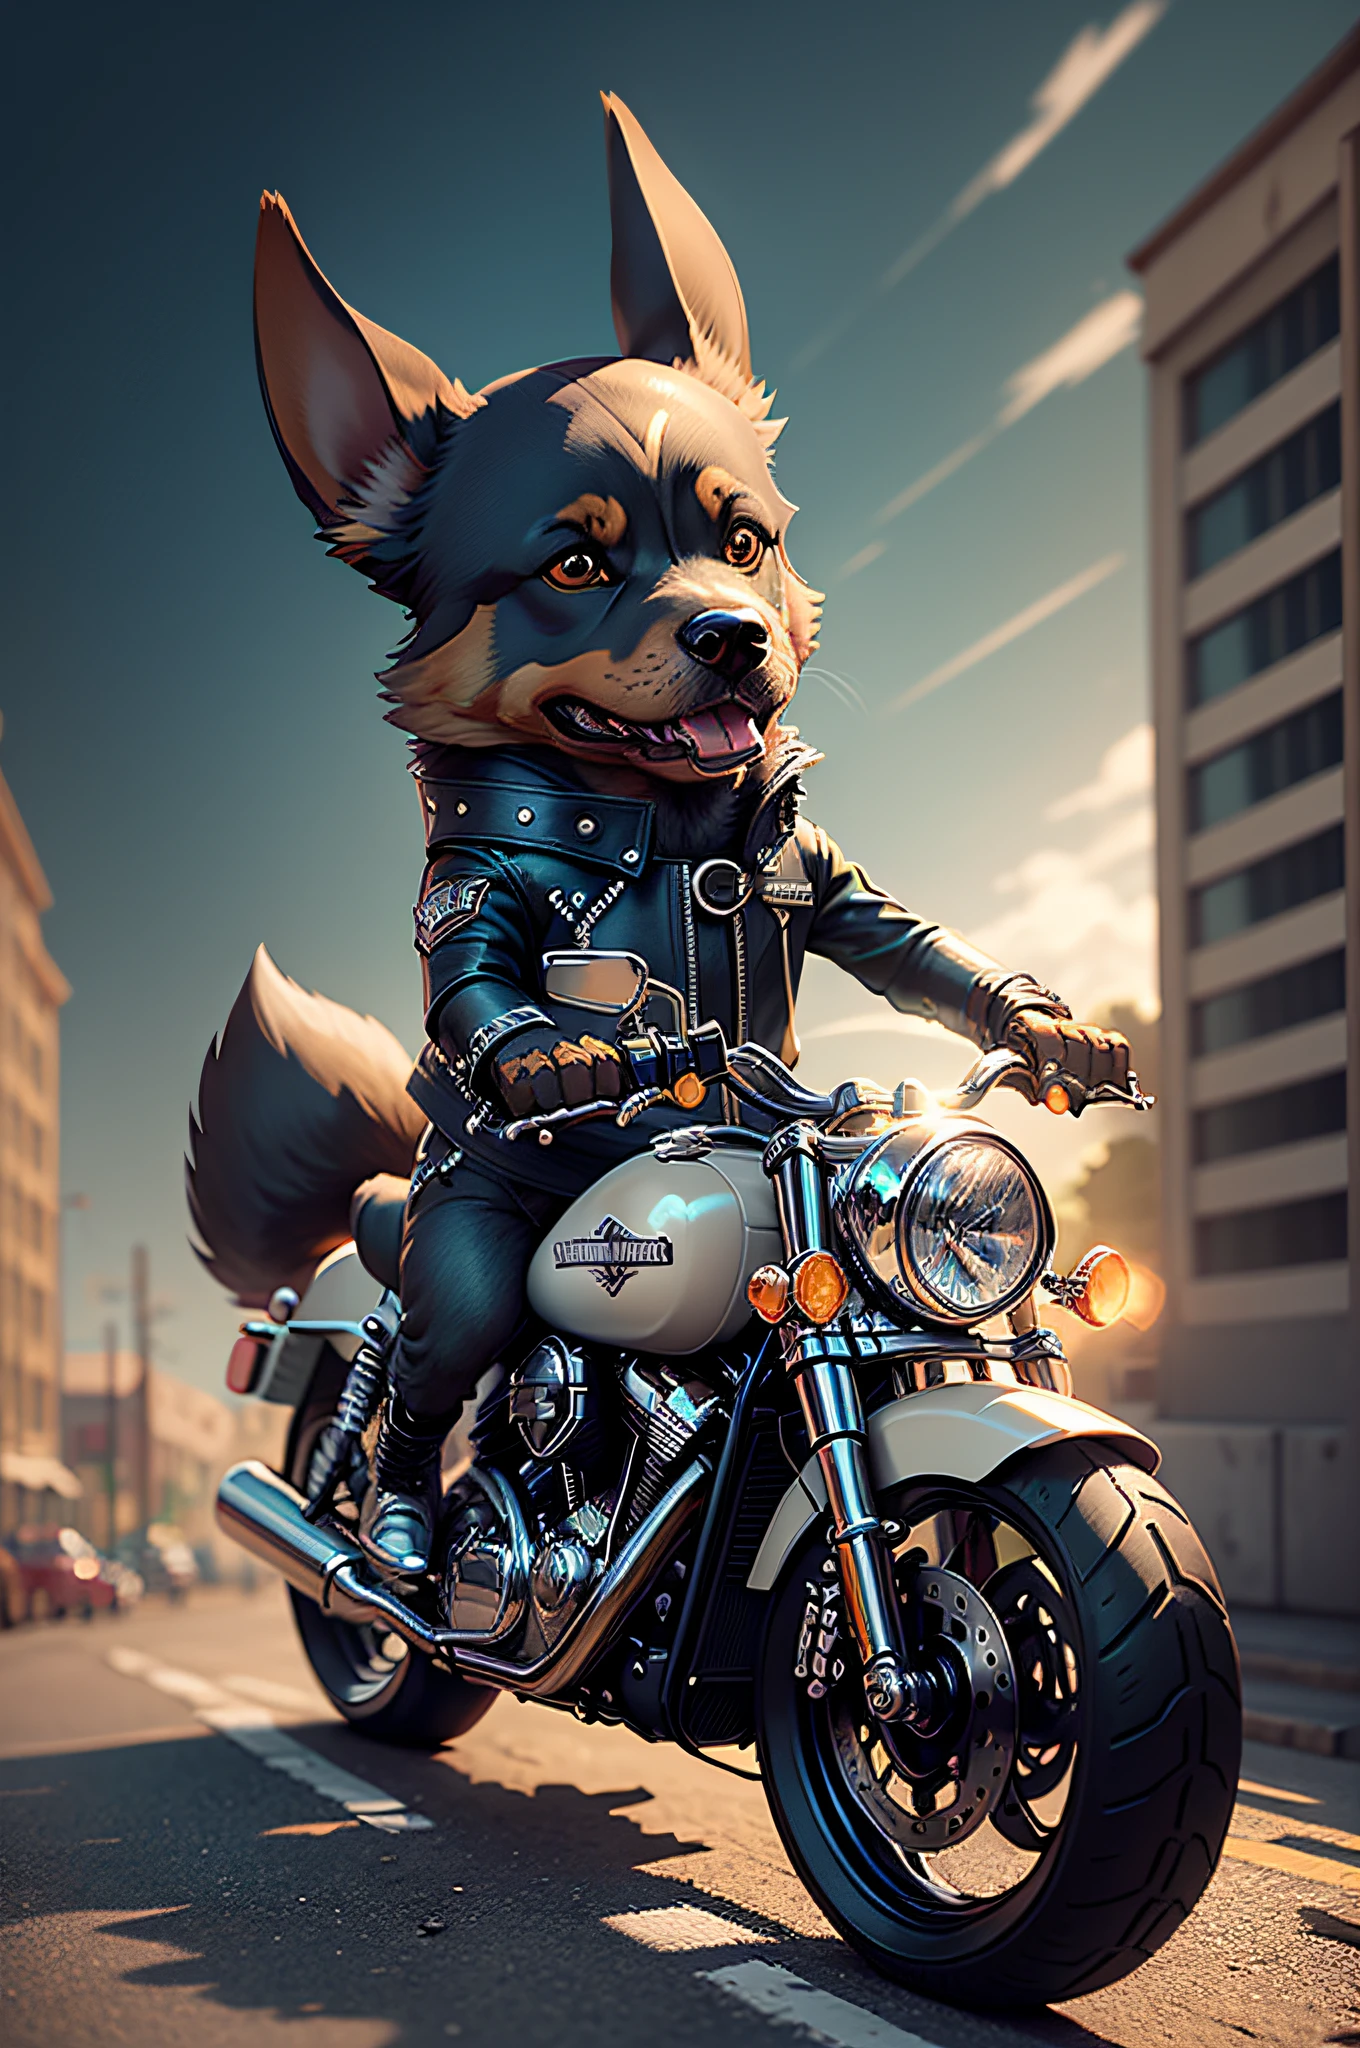 クソ,革のジーンズでハーレーダビッドソンに乗る漫画のドーベルマン犬（ドーベルマン犬の外見の特徴、サングラス）